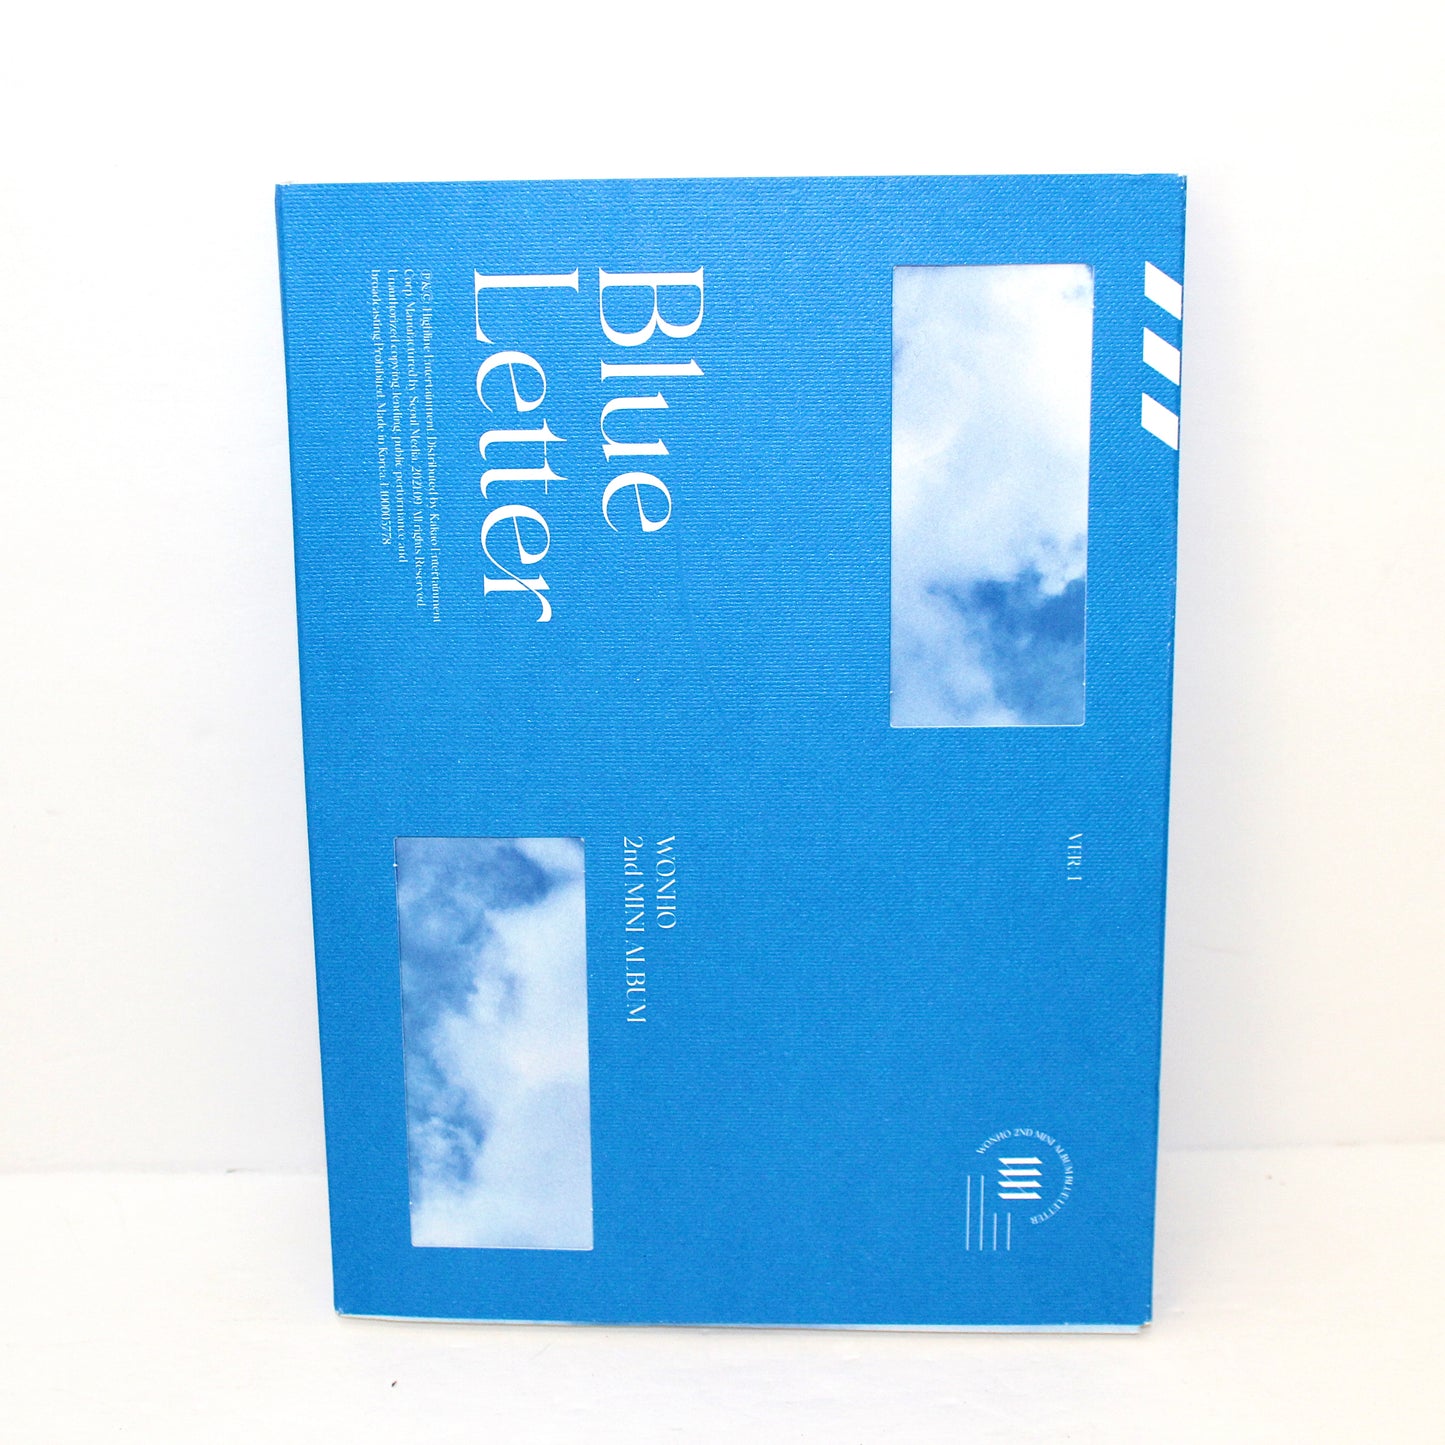 WONHO 2nd Mini Album: Blue Letter | Ver. 1